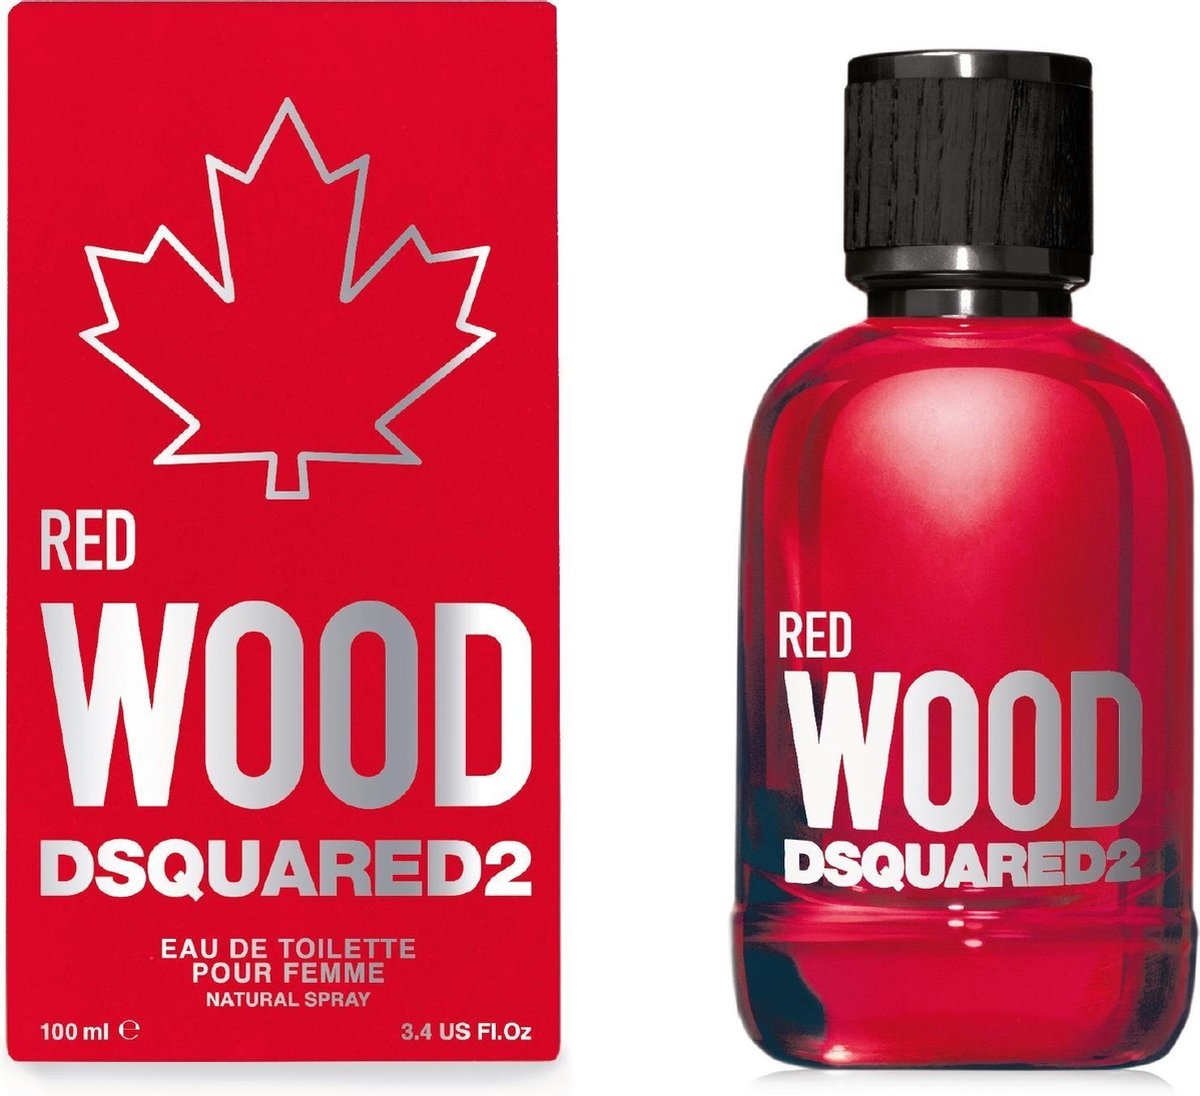 Dsquared2 Red Wood pour Femme - Eau de toilette - 100 ml - Parfum Femme